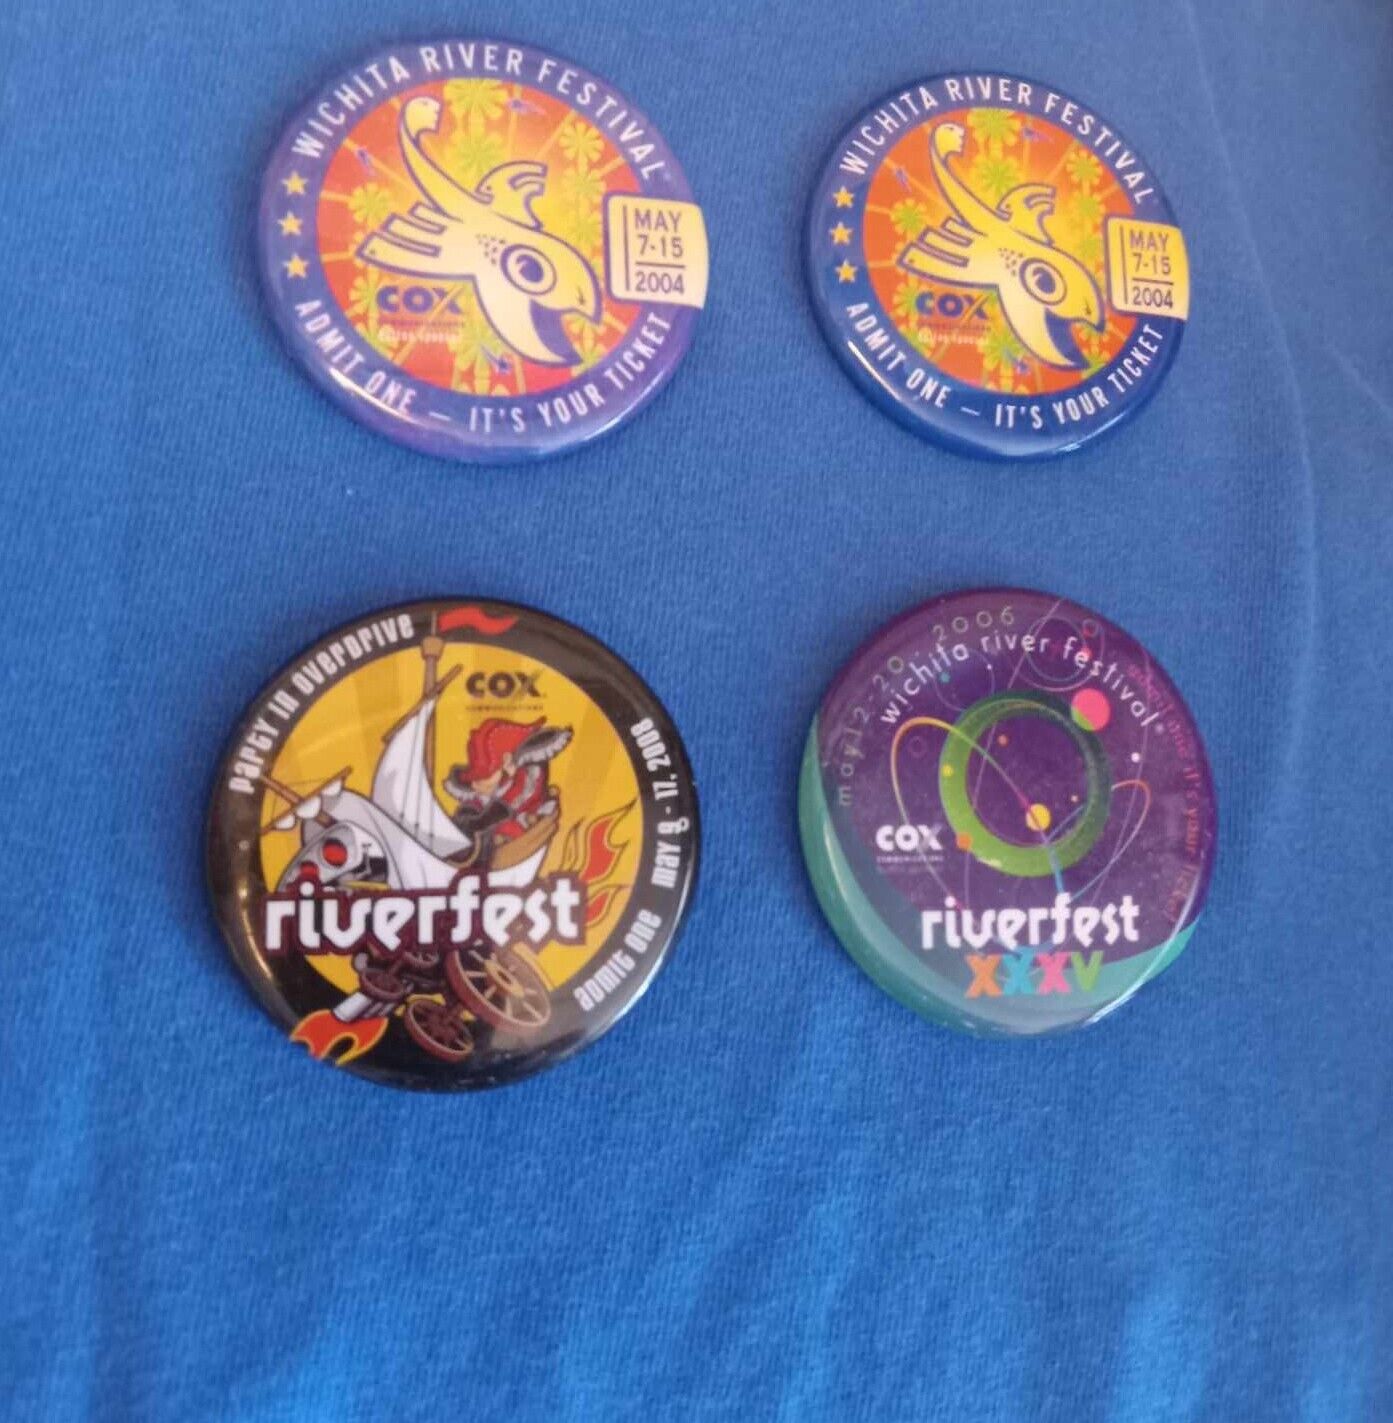 Vintage Riverfest River Festival Pins Buttons 2004, 2006, 2008 Lot of 4